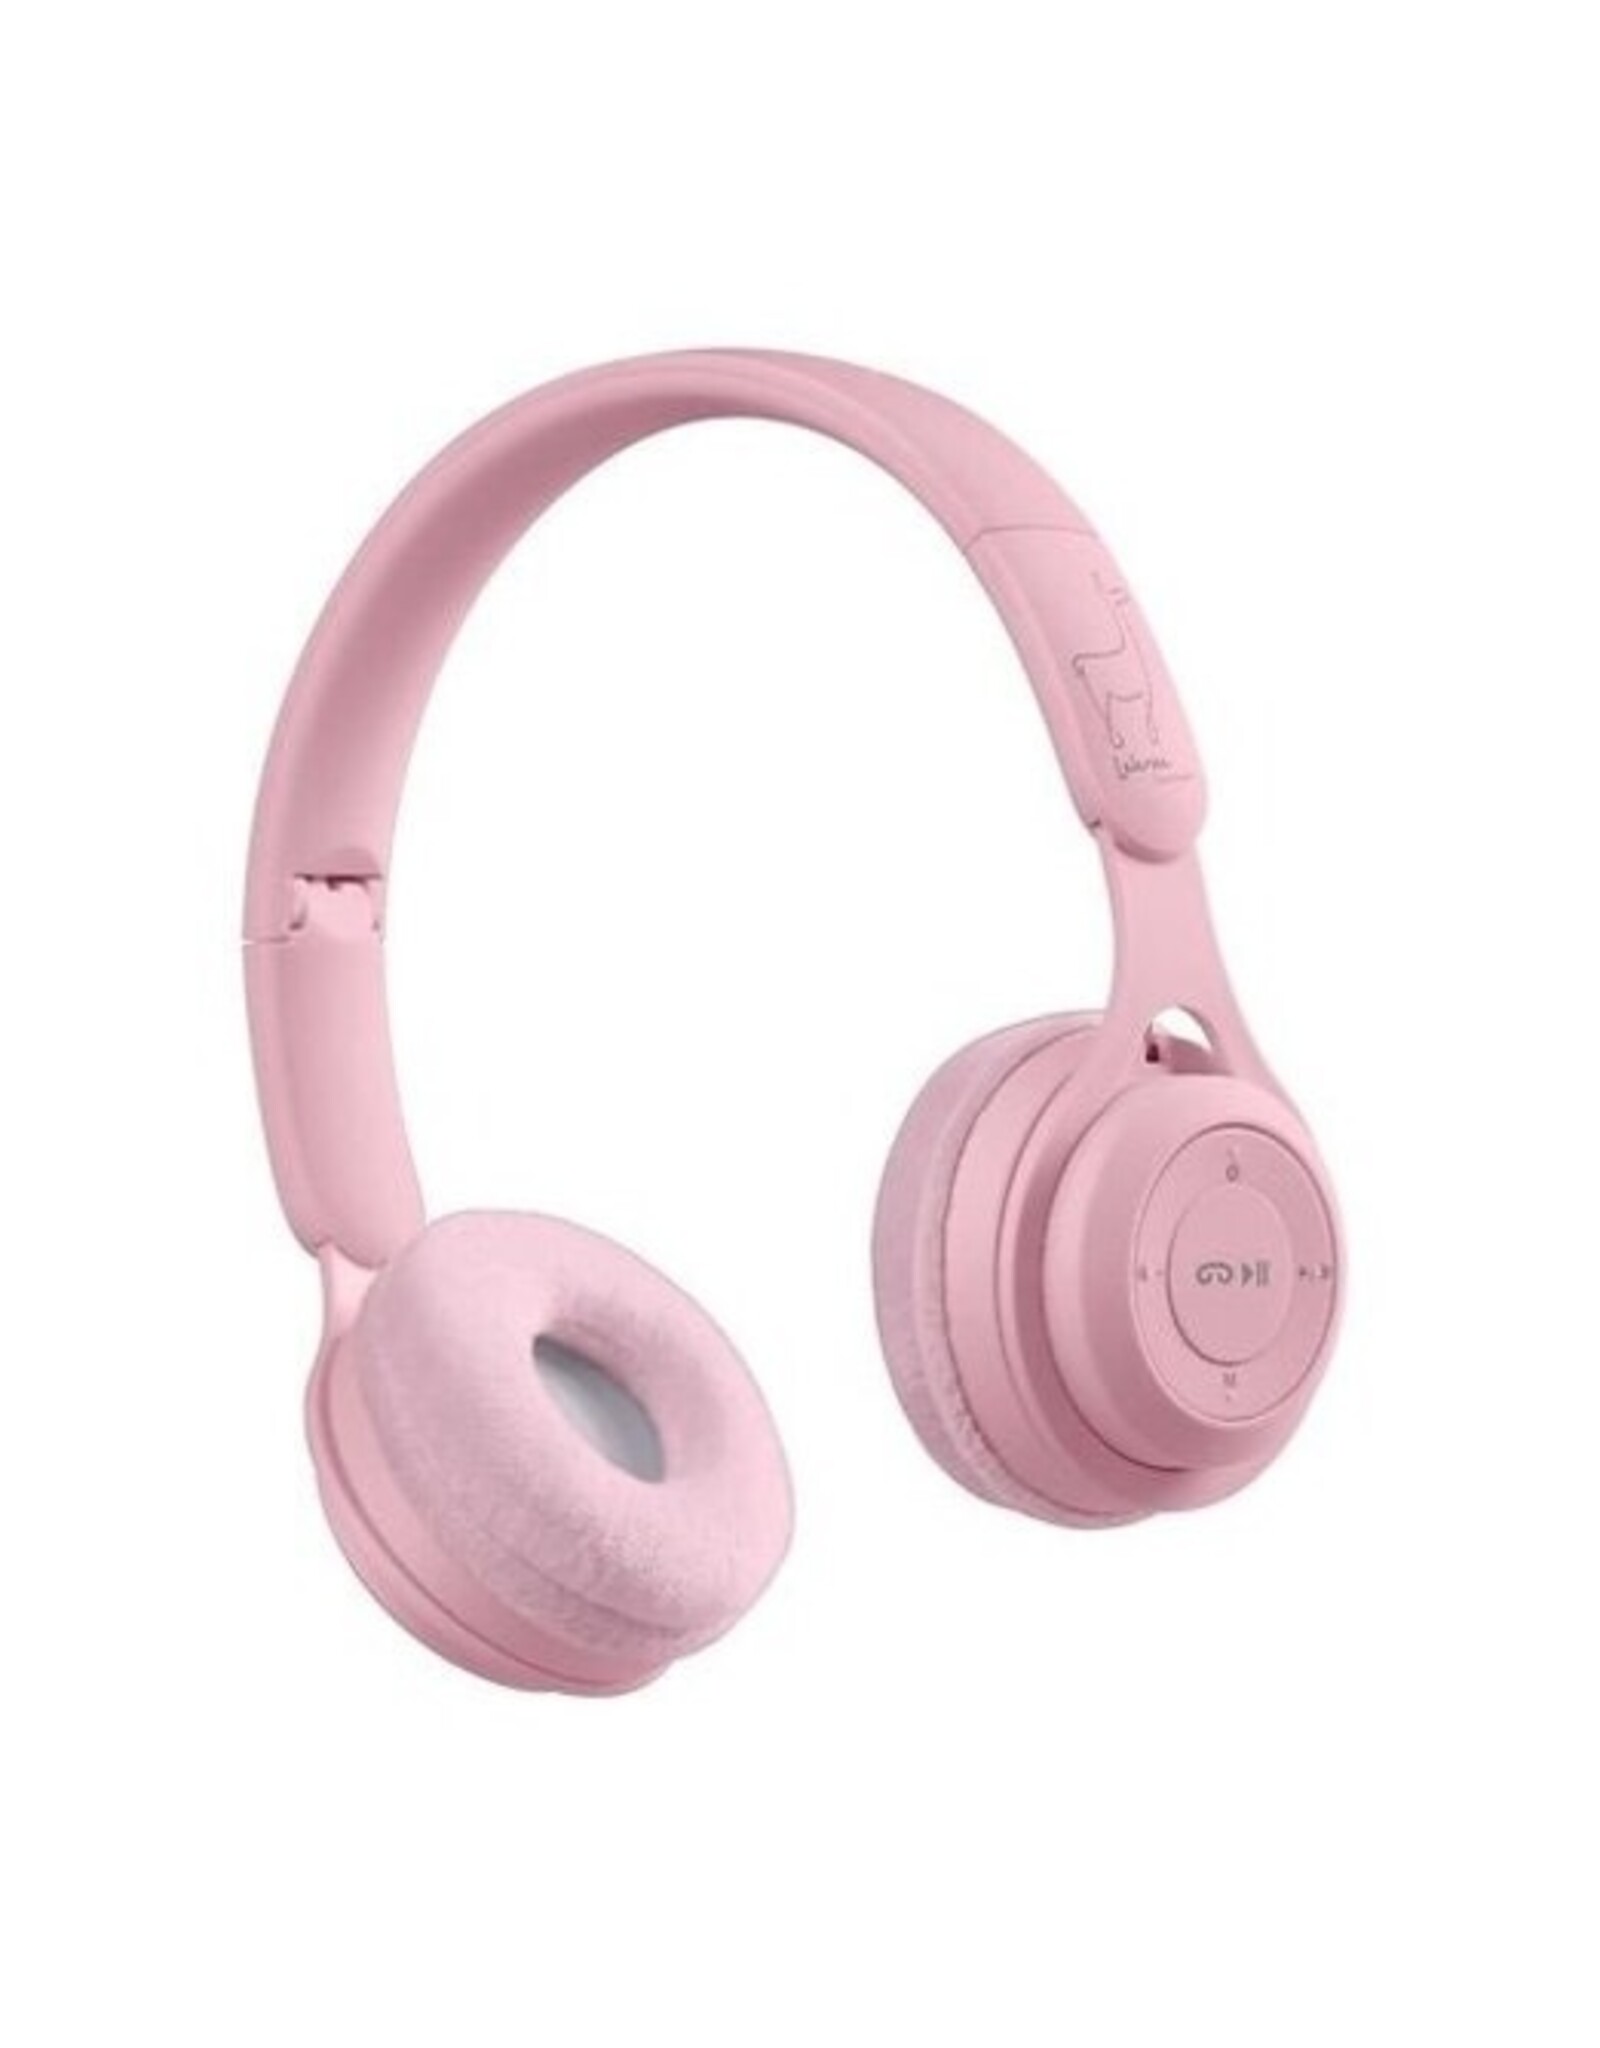 Lalarma Draadloze koptelefoon roze